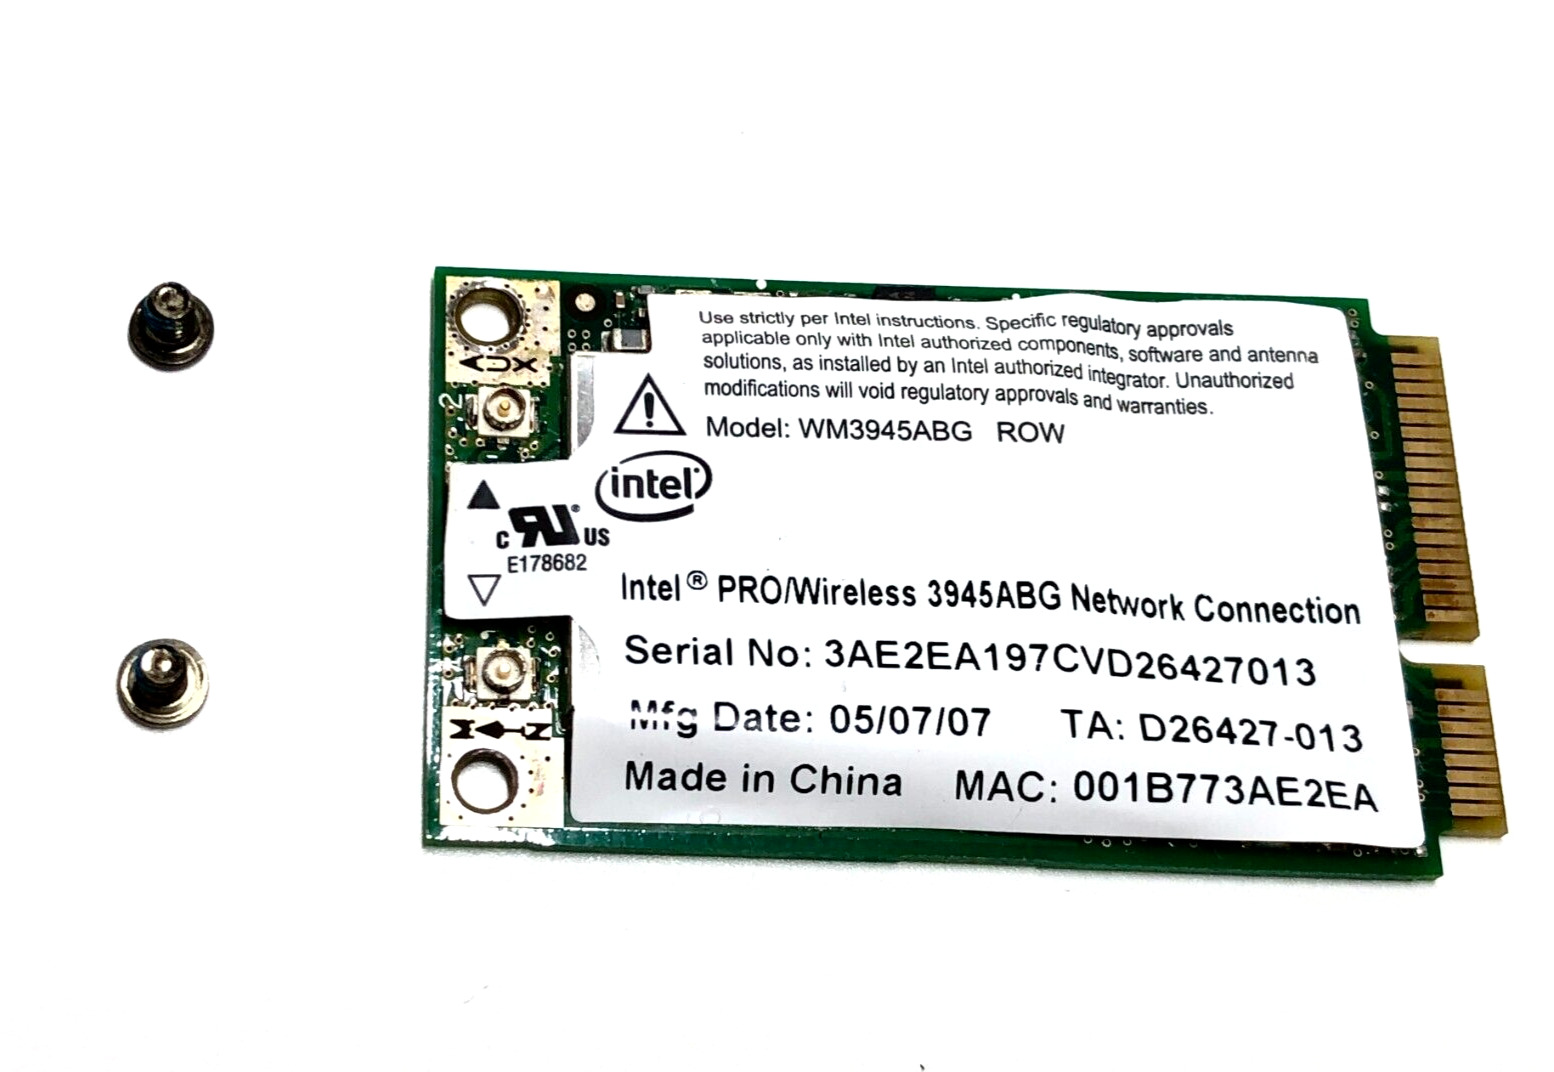 Intel PRO/Wireless WM3945ABG 54Mbps 802.11a/b/g Mini PCI Express WIFI Card